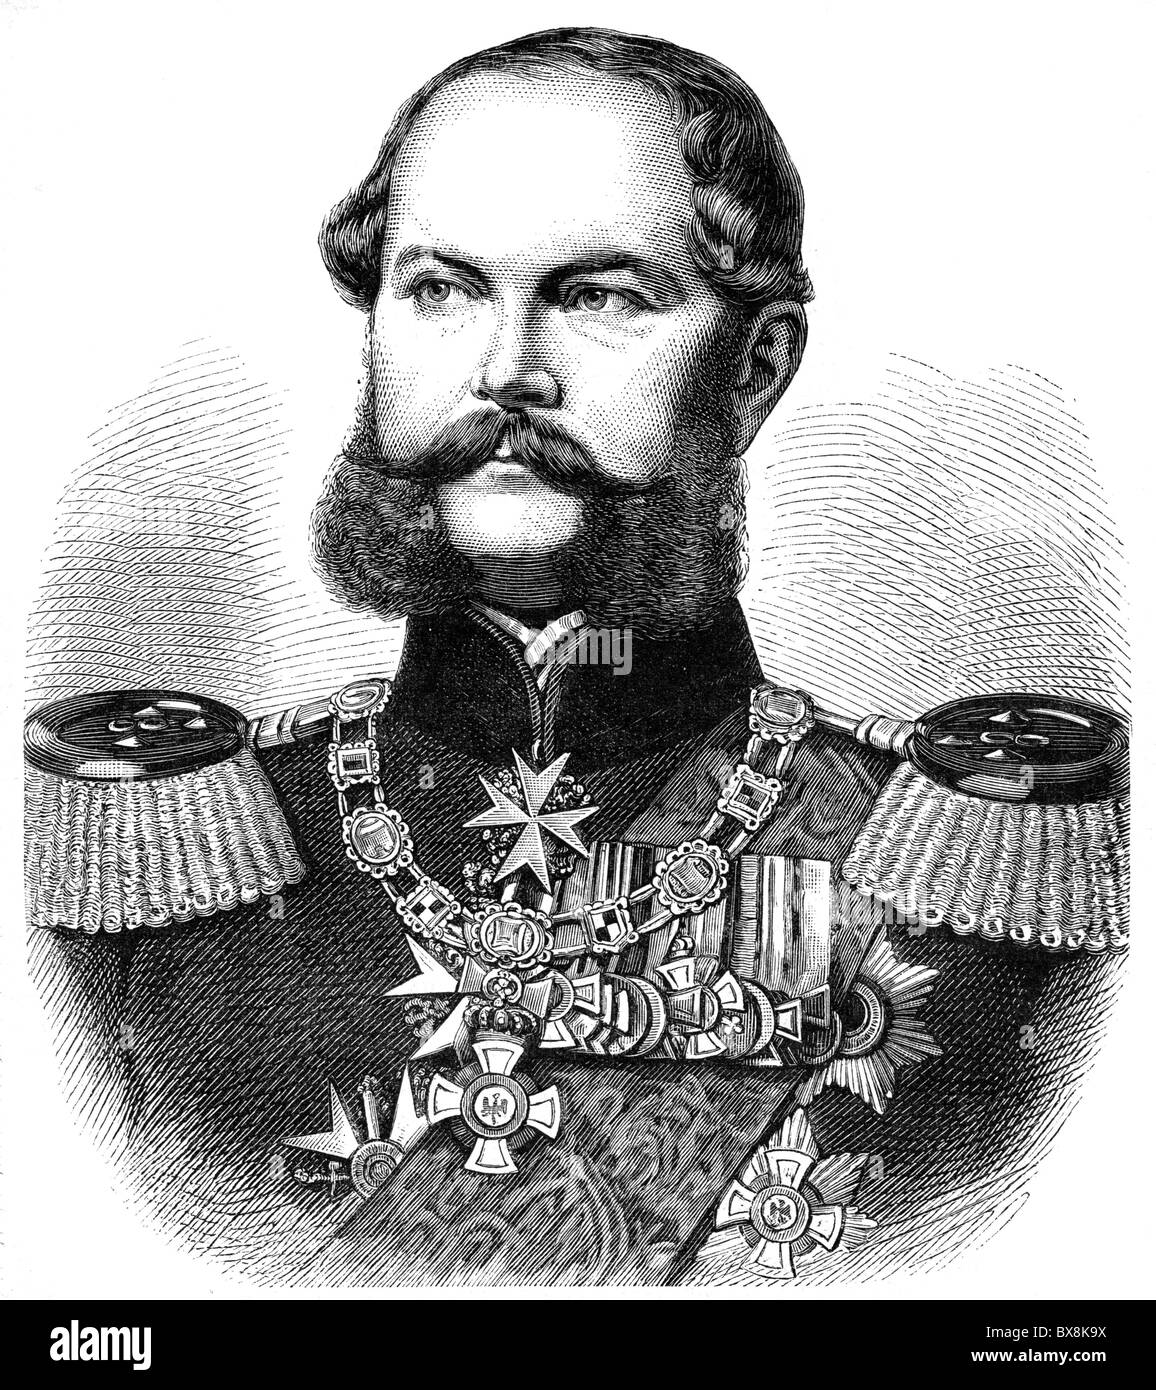 Carlo, 29.6.1801 - 21.1.1883, Principe di Prussia, generale prussiano, ritratto, incisione in legno, 19th secolo, Foto Stock